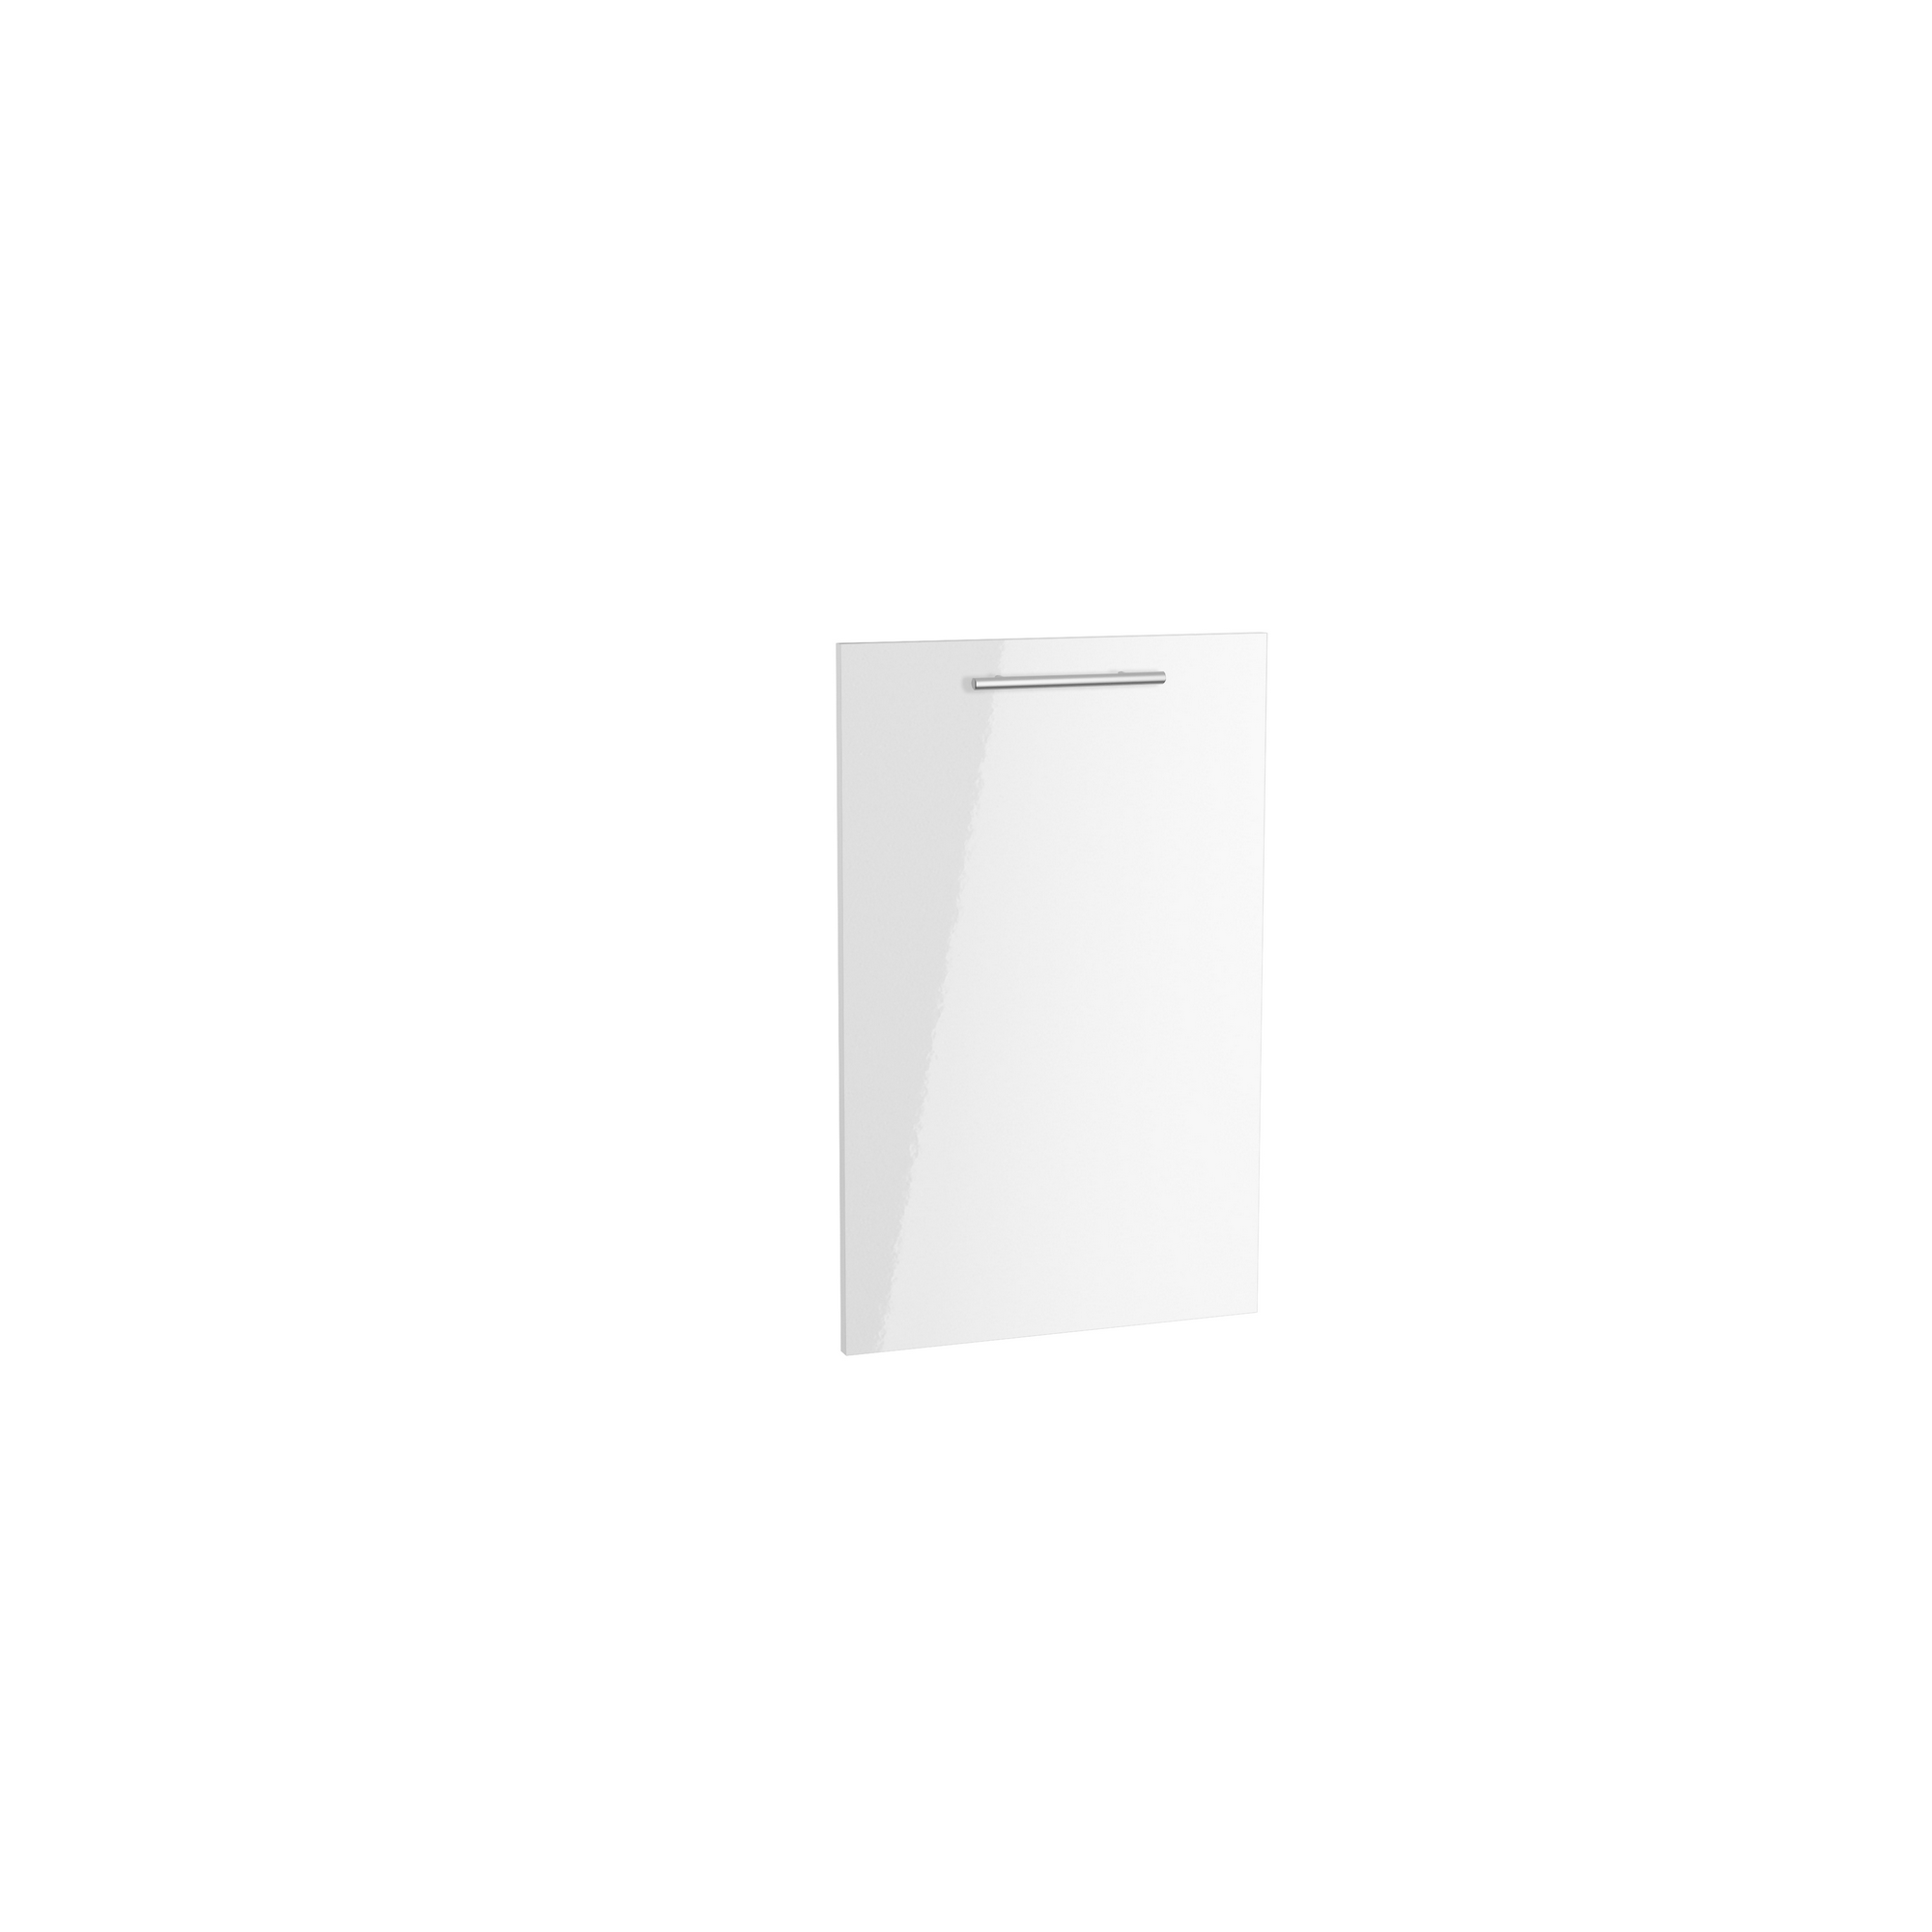 Tür für vollintegrierten Geschirrspüler 'Optikomfort Rurik986' weiß 44,6 x 70 x 1,6 cm + product picture